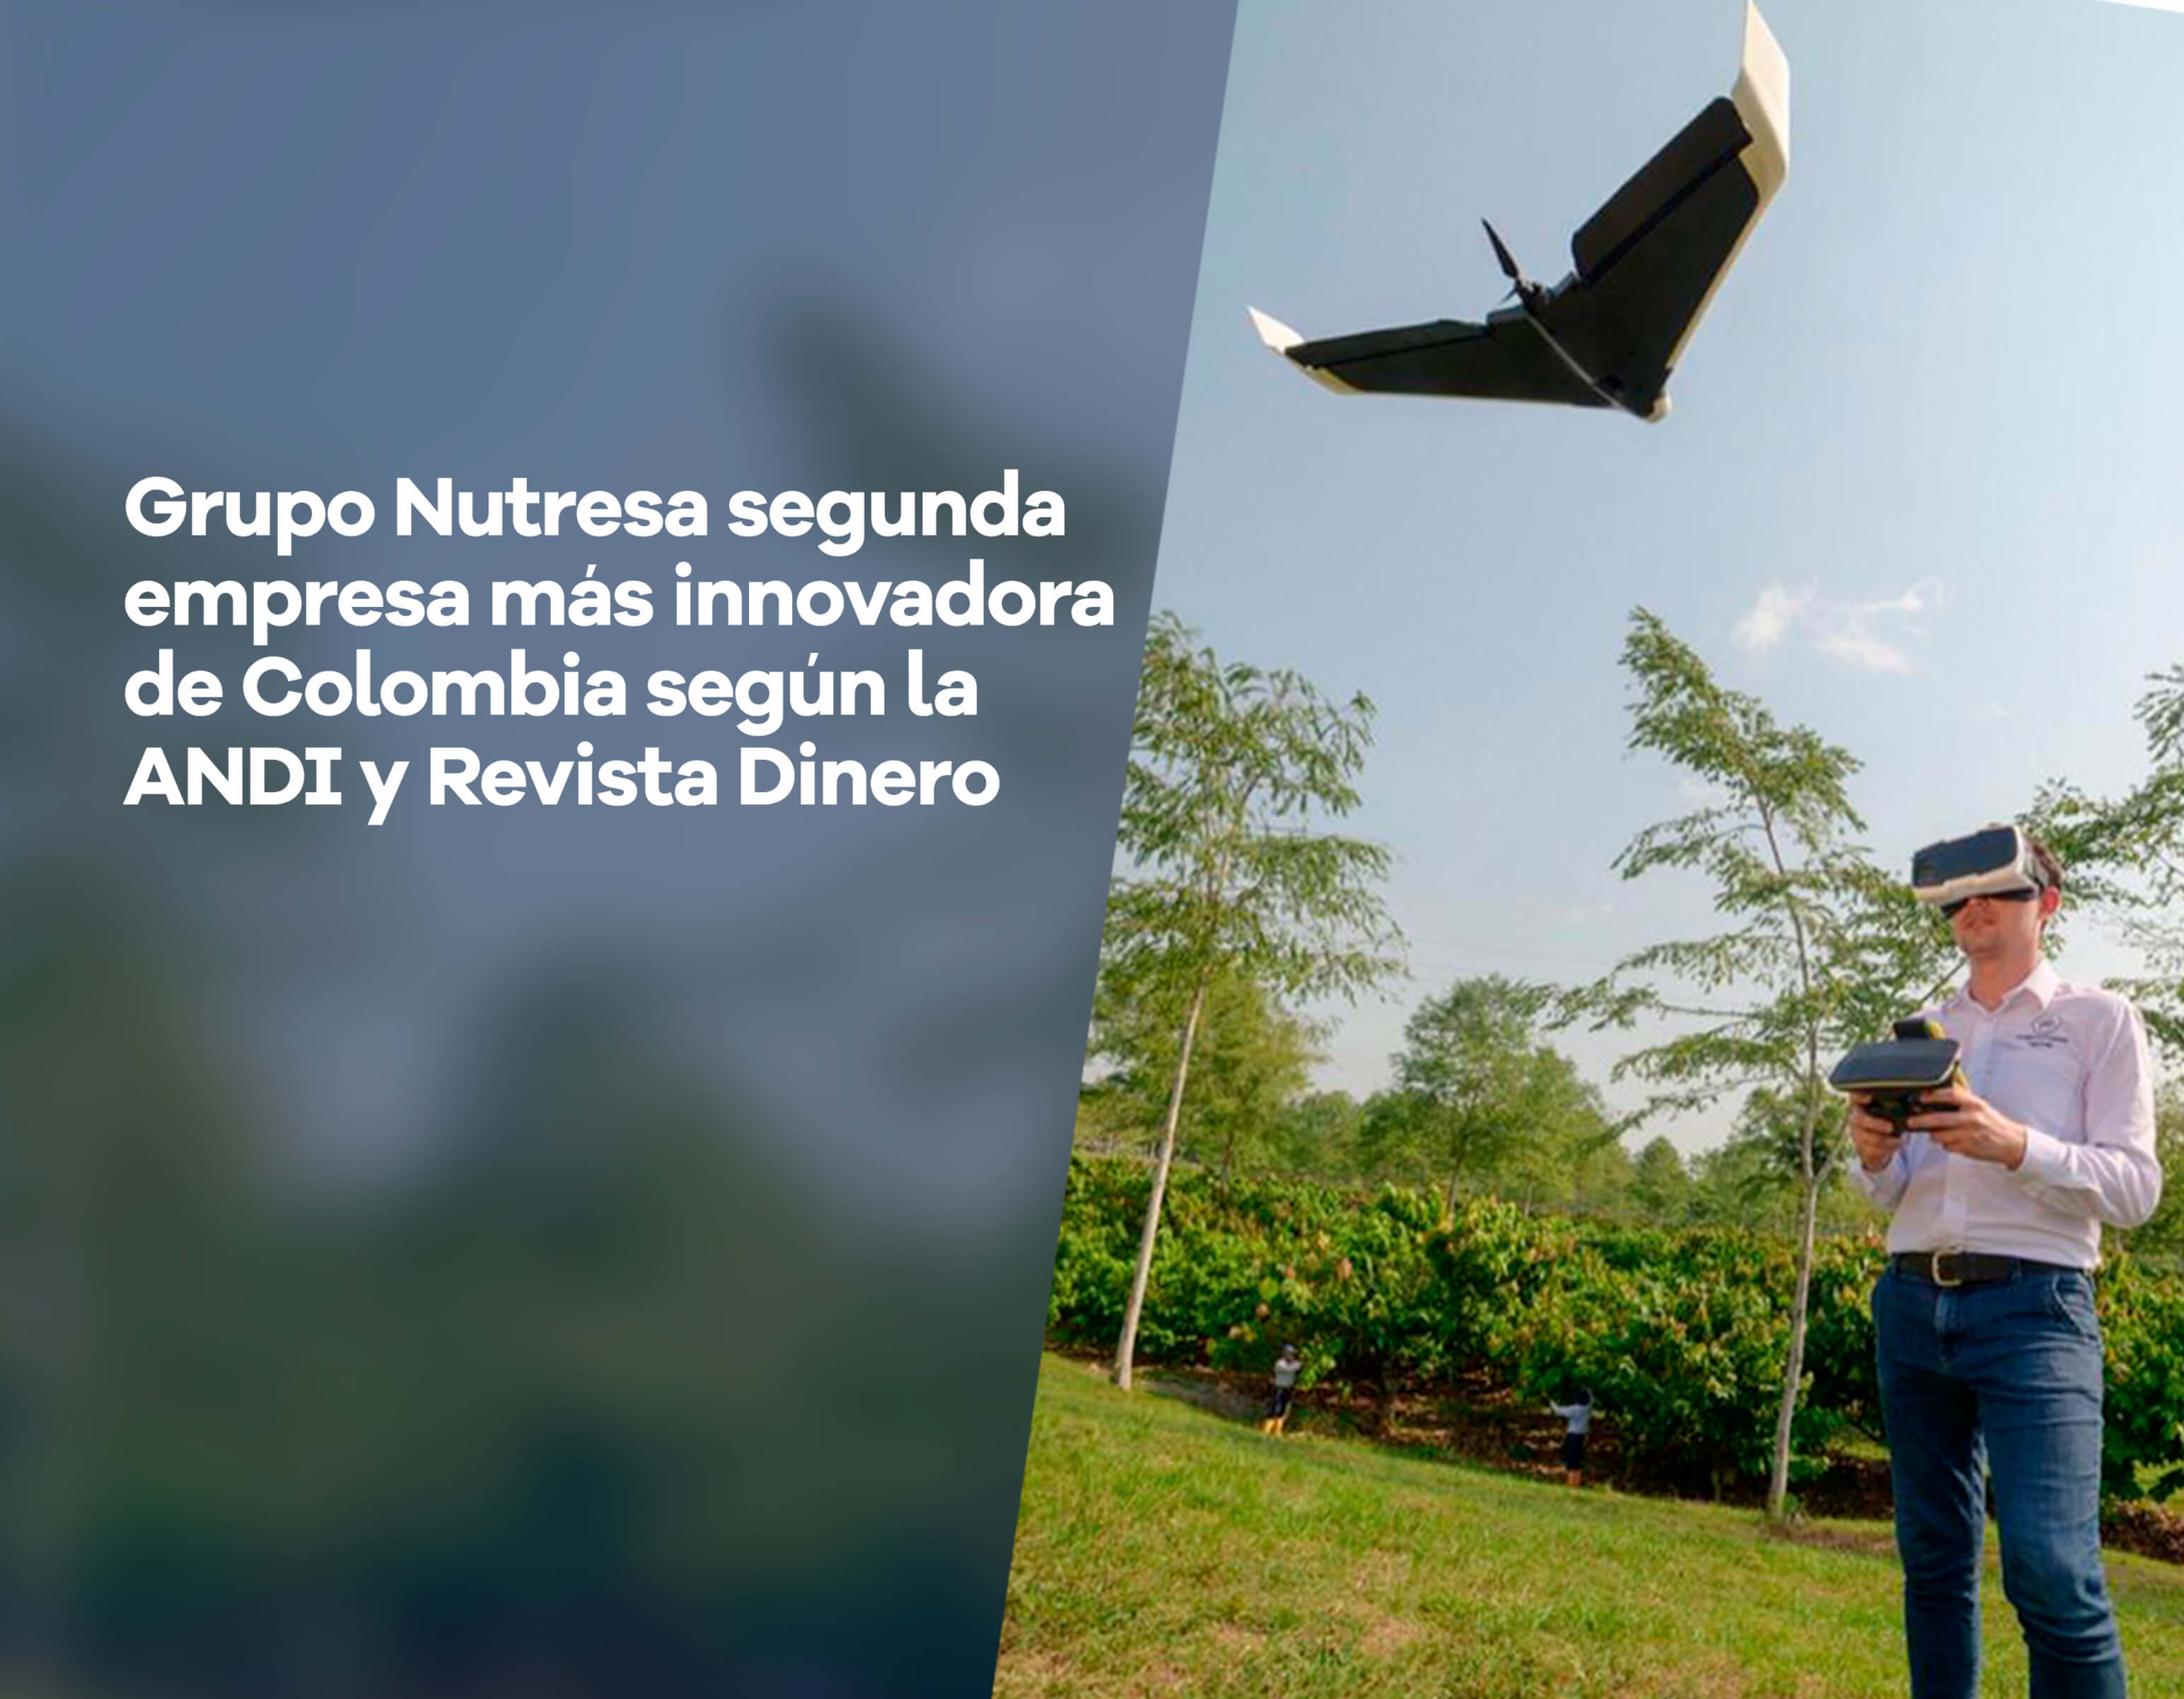 Grupo Nutresa, segunda empresa más innovadora de Colombia según la ANDI y Revista Dinero